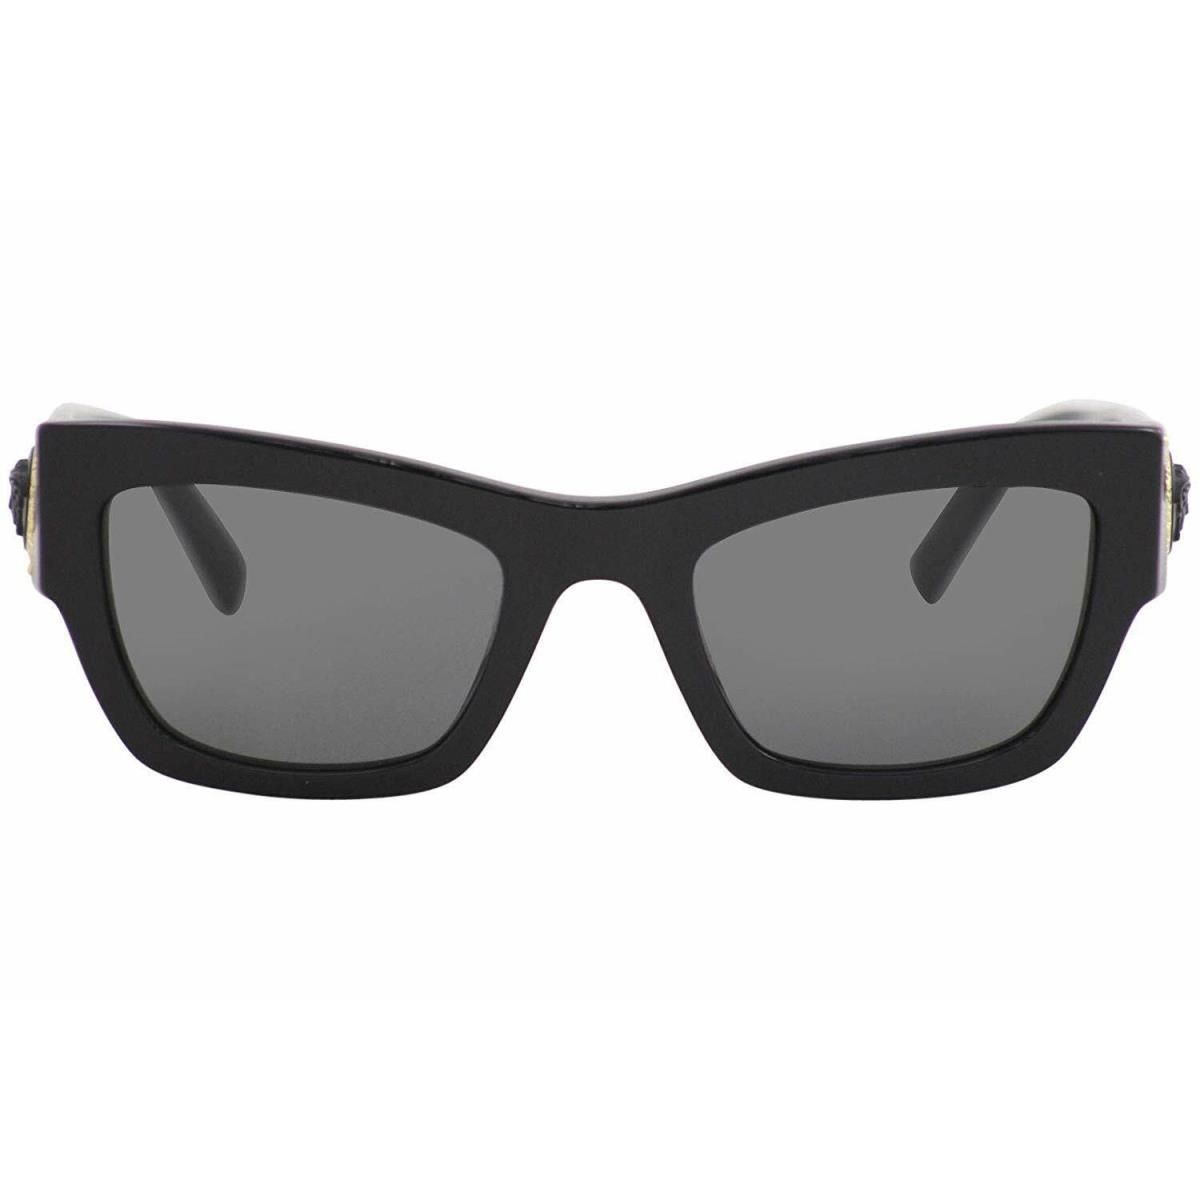 Versace VE4358 529587 52mm Sunglasses Black / Grey Lens - Frame: Black, Lens: Grey